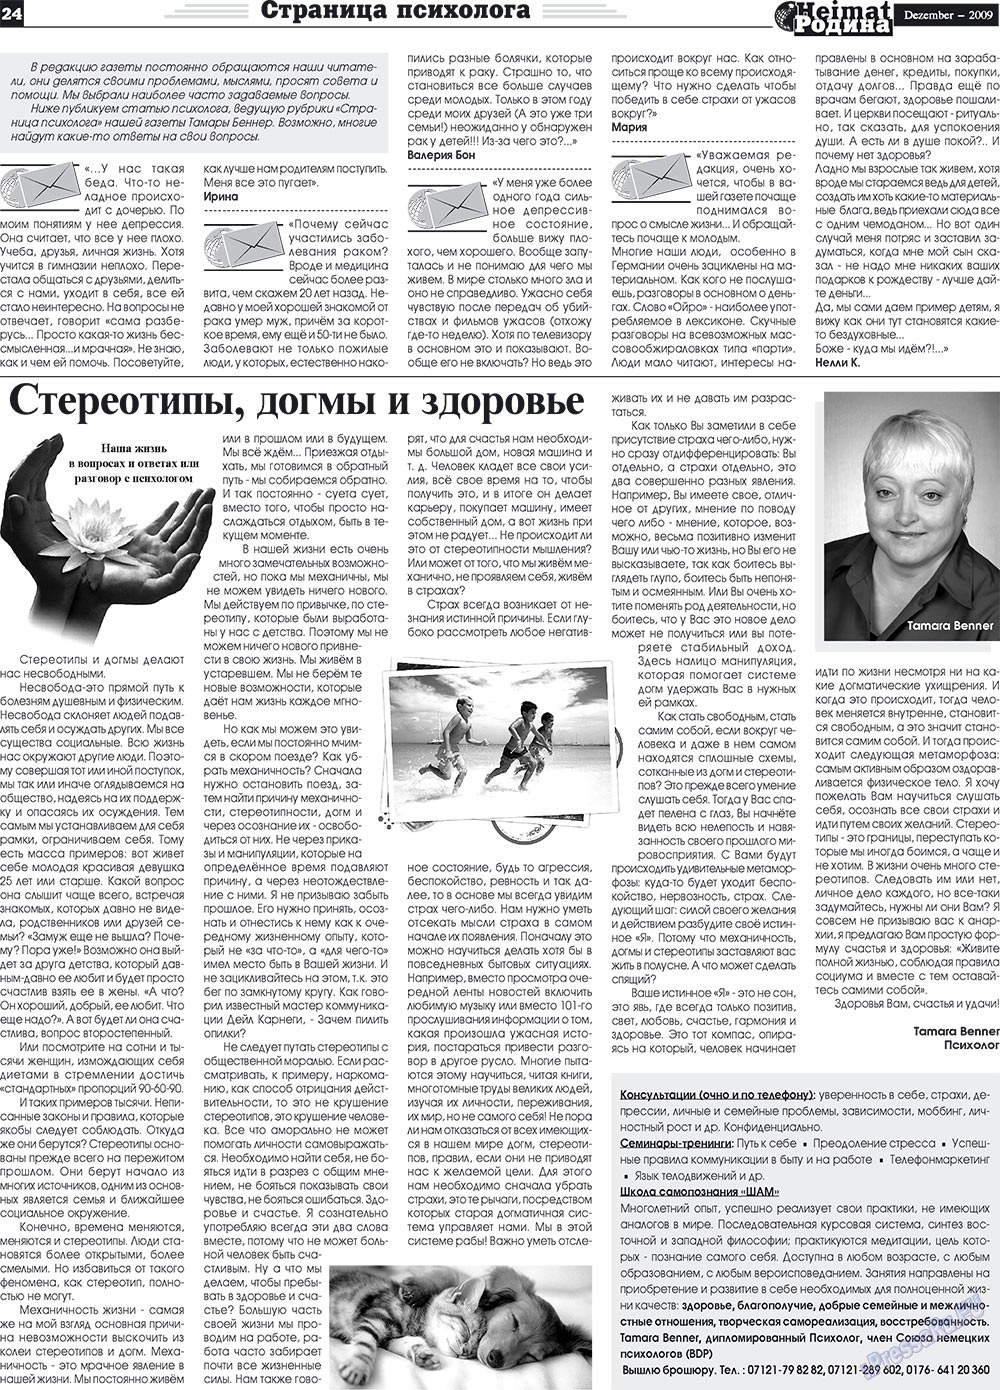 Heimat-Родина (газета). 2009 год, номер 12, стр. 24